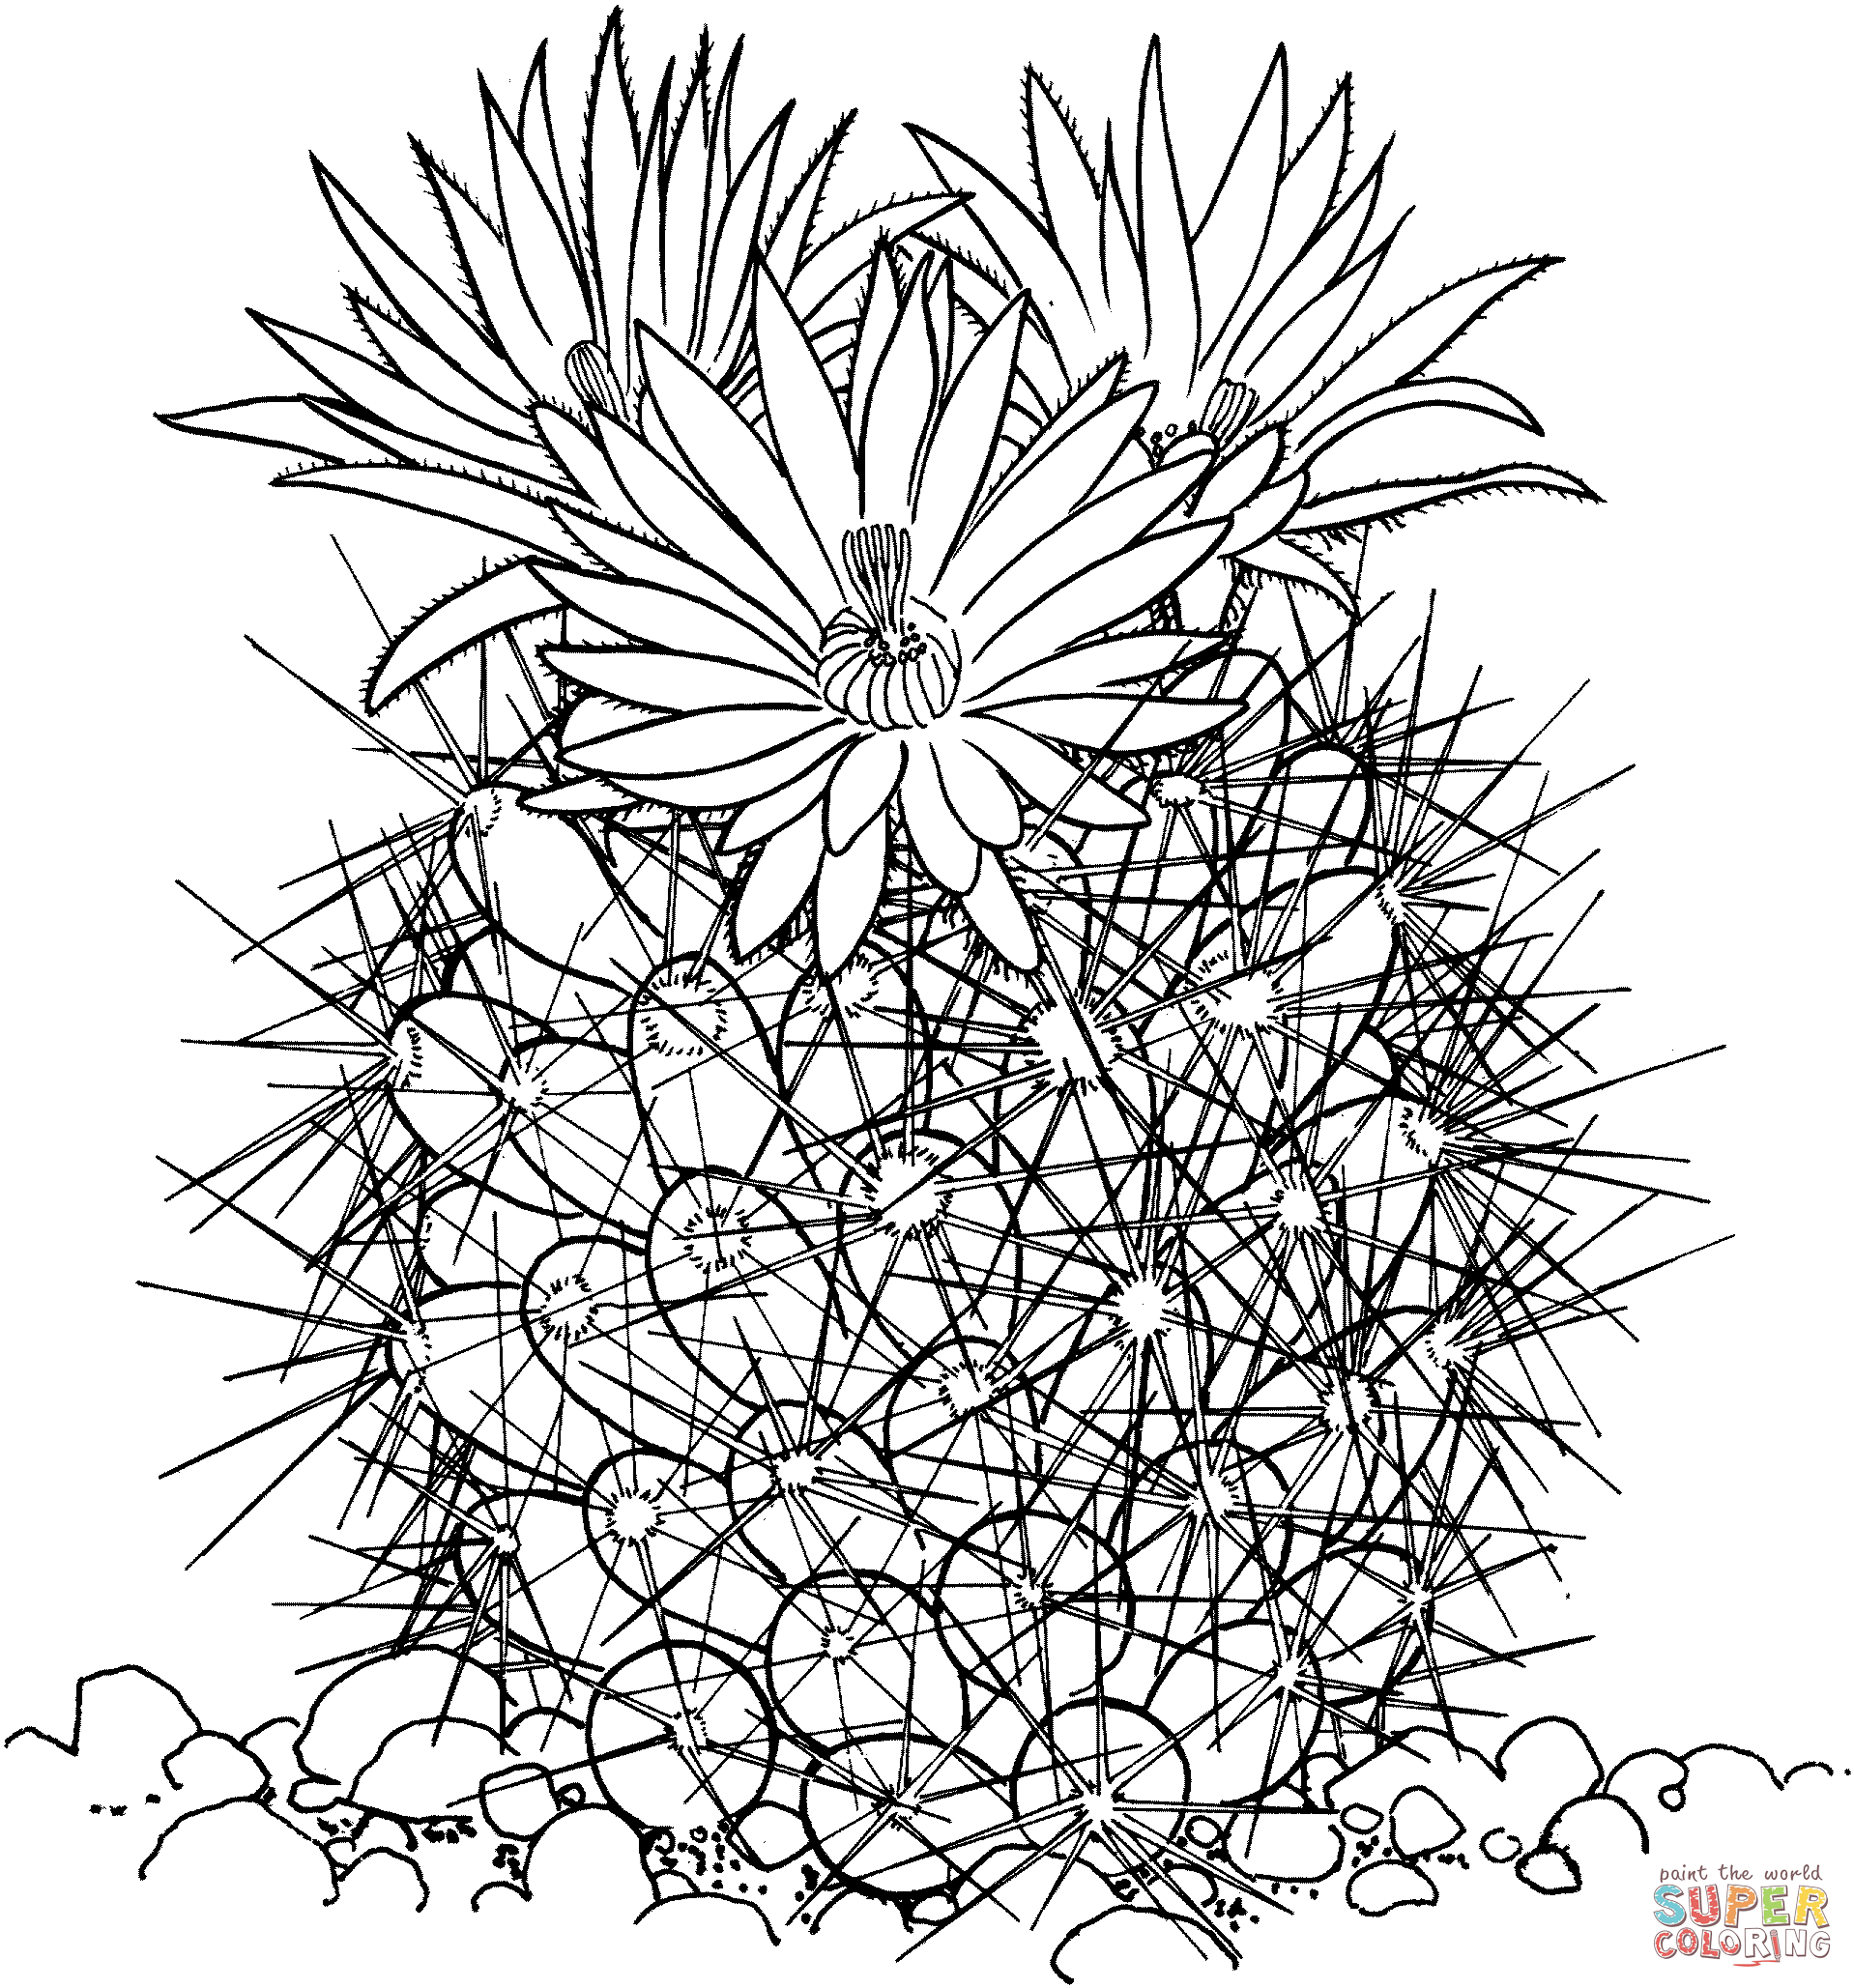 Coryphantha Vivipara oder Bienenstockkaktus von Cactus